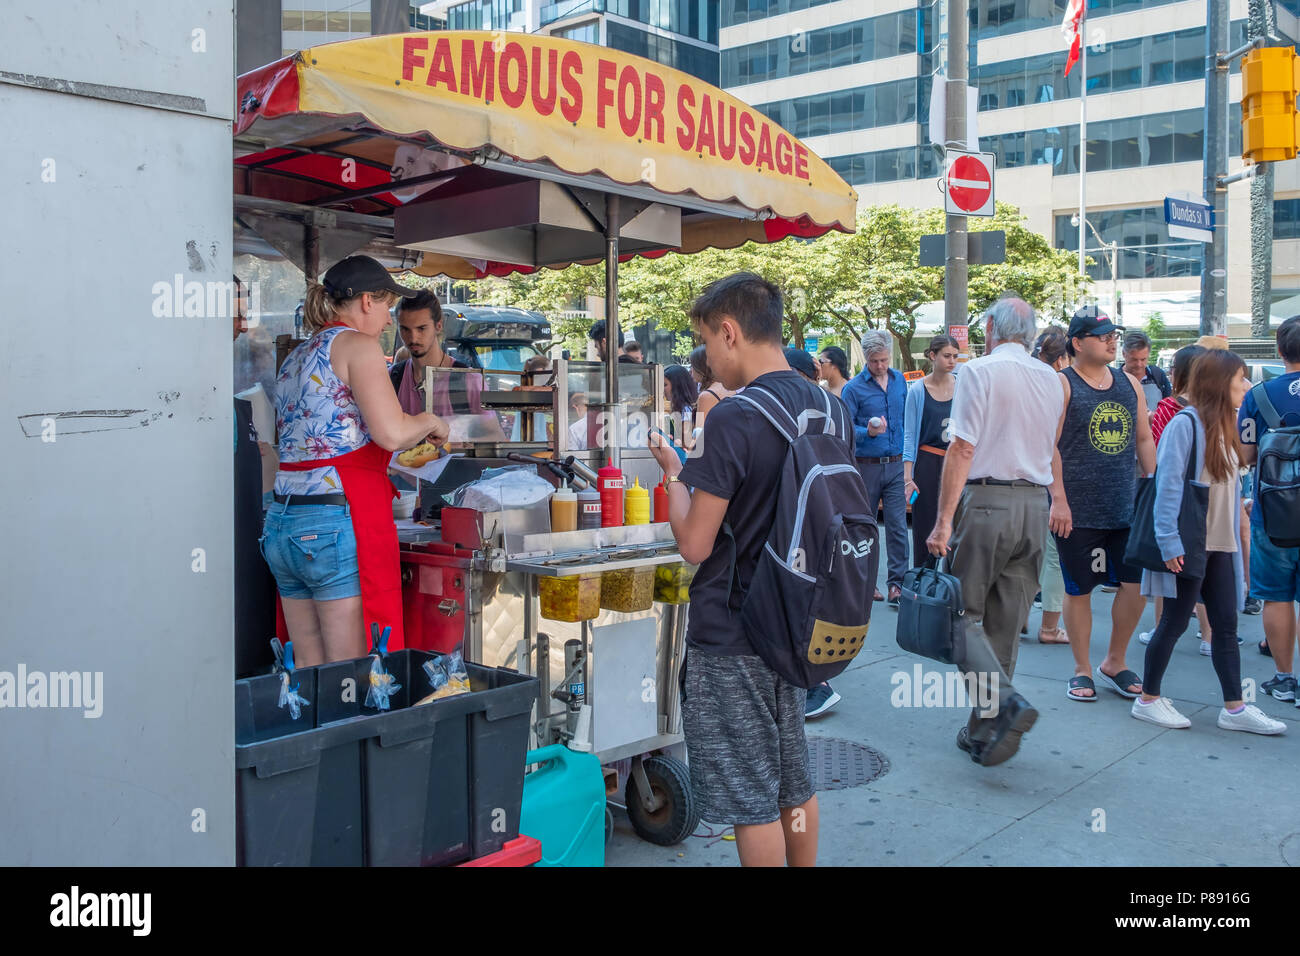 Vendeur vend ses saucisses à partir d'un panier dans une rue bondée à Toronto (Ontario) Canada. Banque D'Images